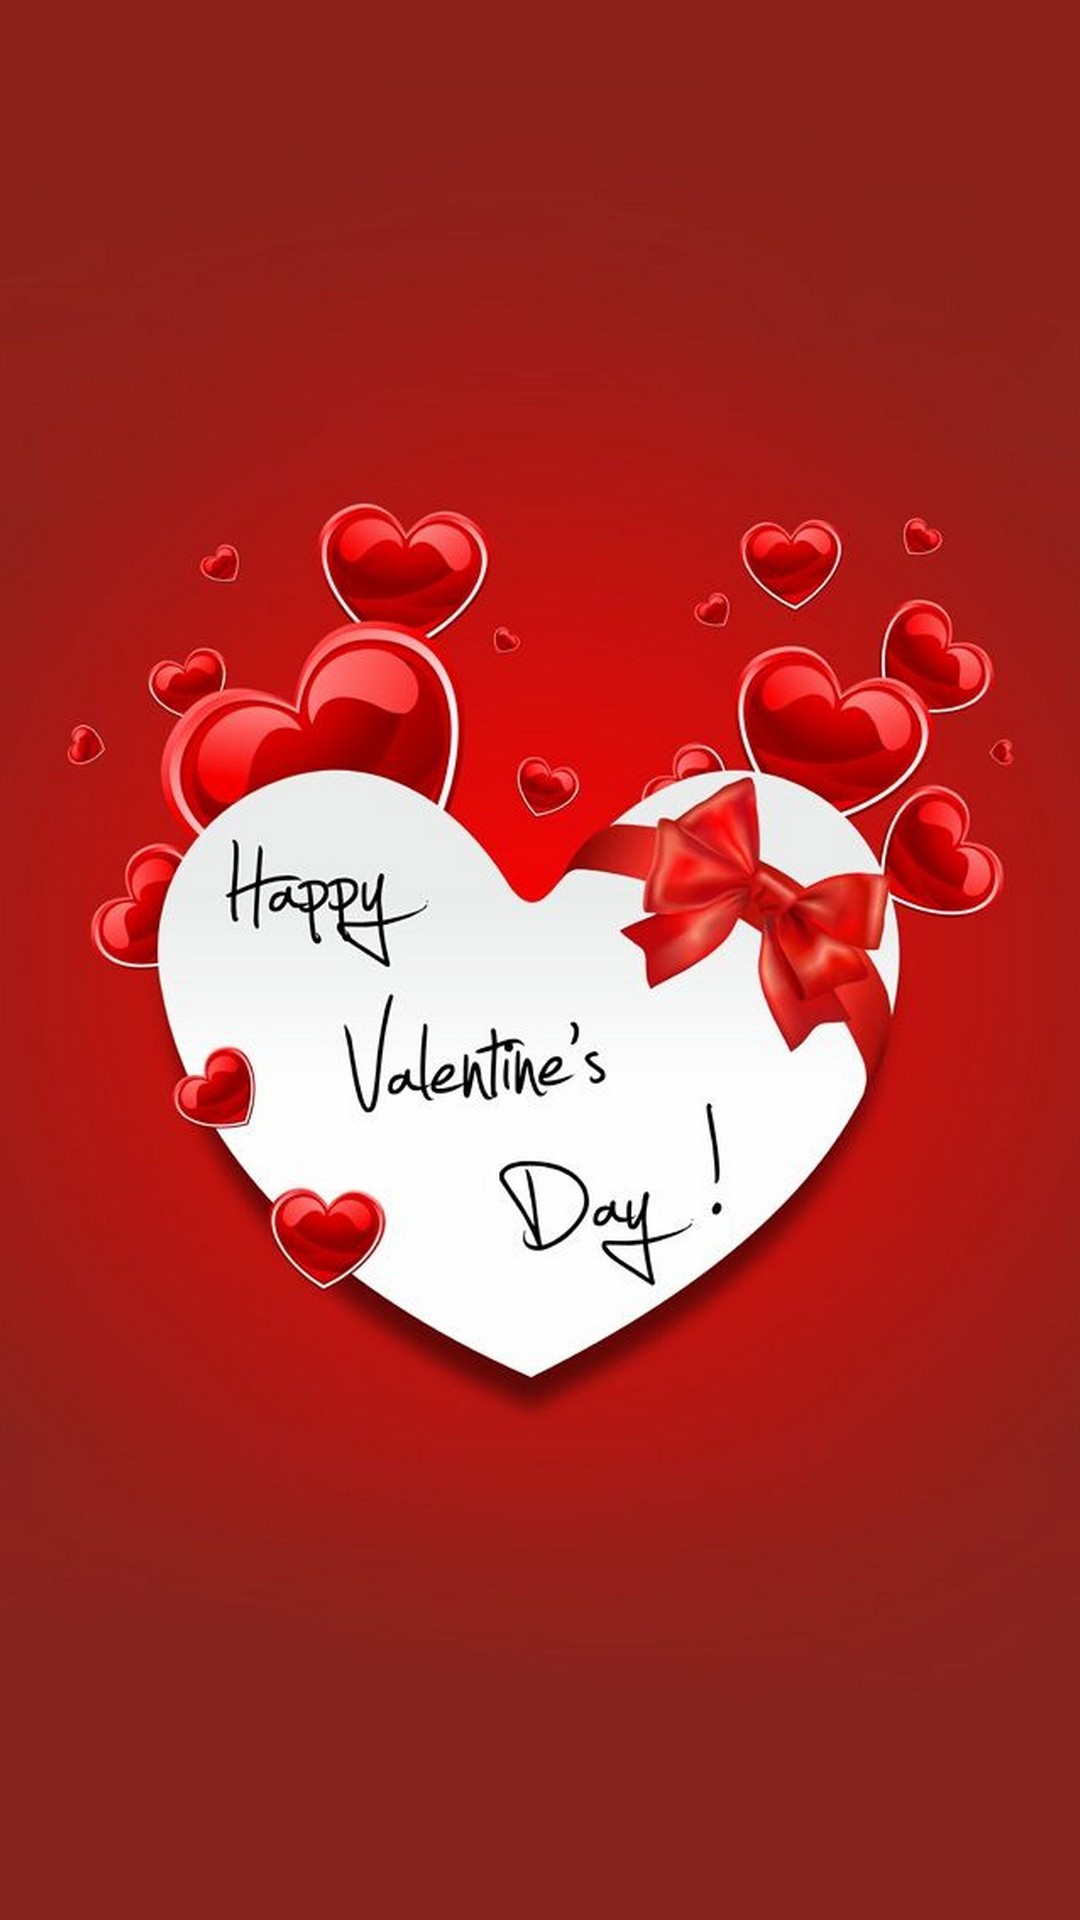 carta da parati felice,cuore,amore,rosso,testo,san valentino